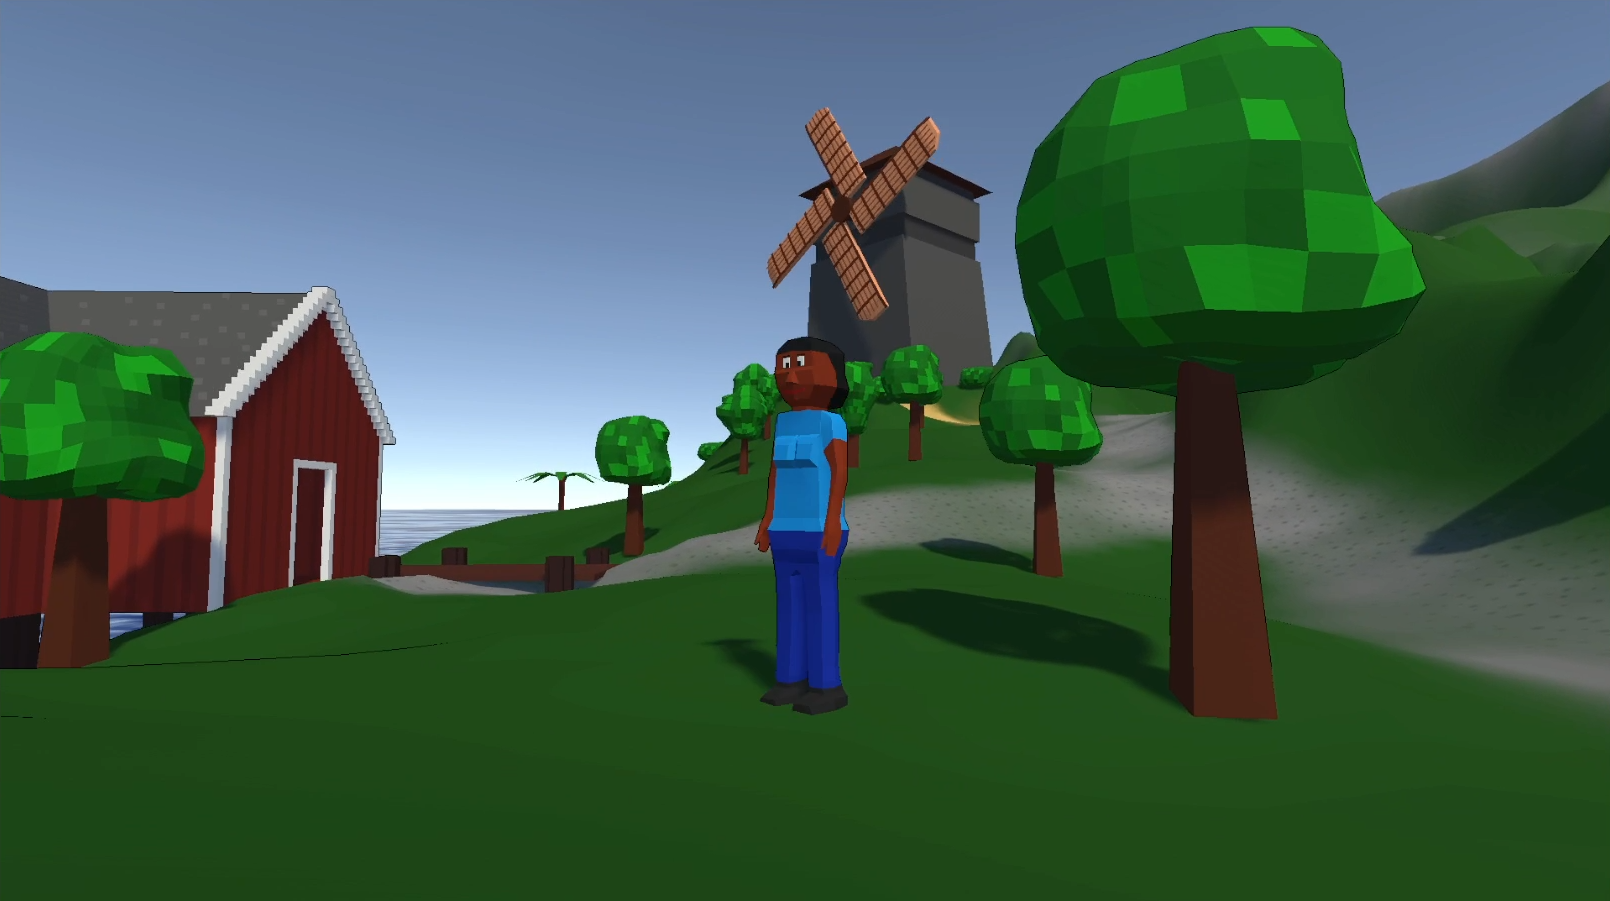 Screenshot: Spieler steht neben Fischerhütte, Windmühle im Hintergrund